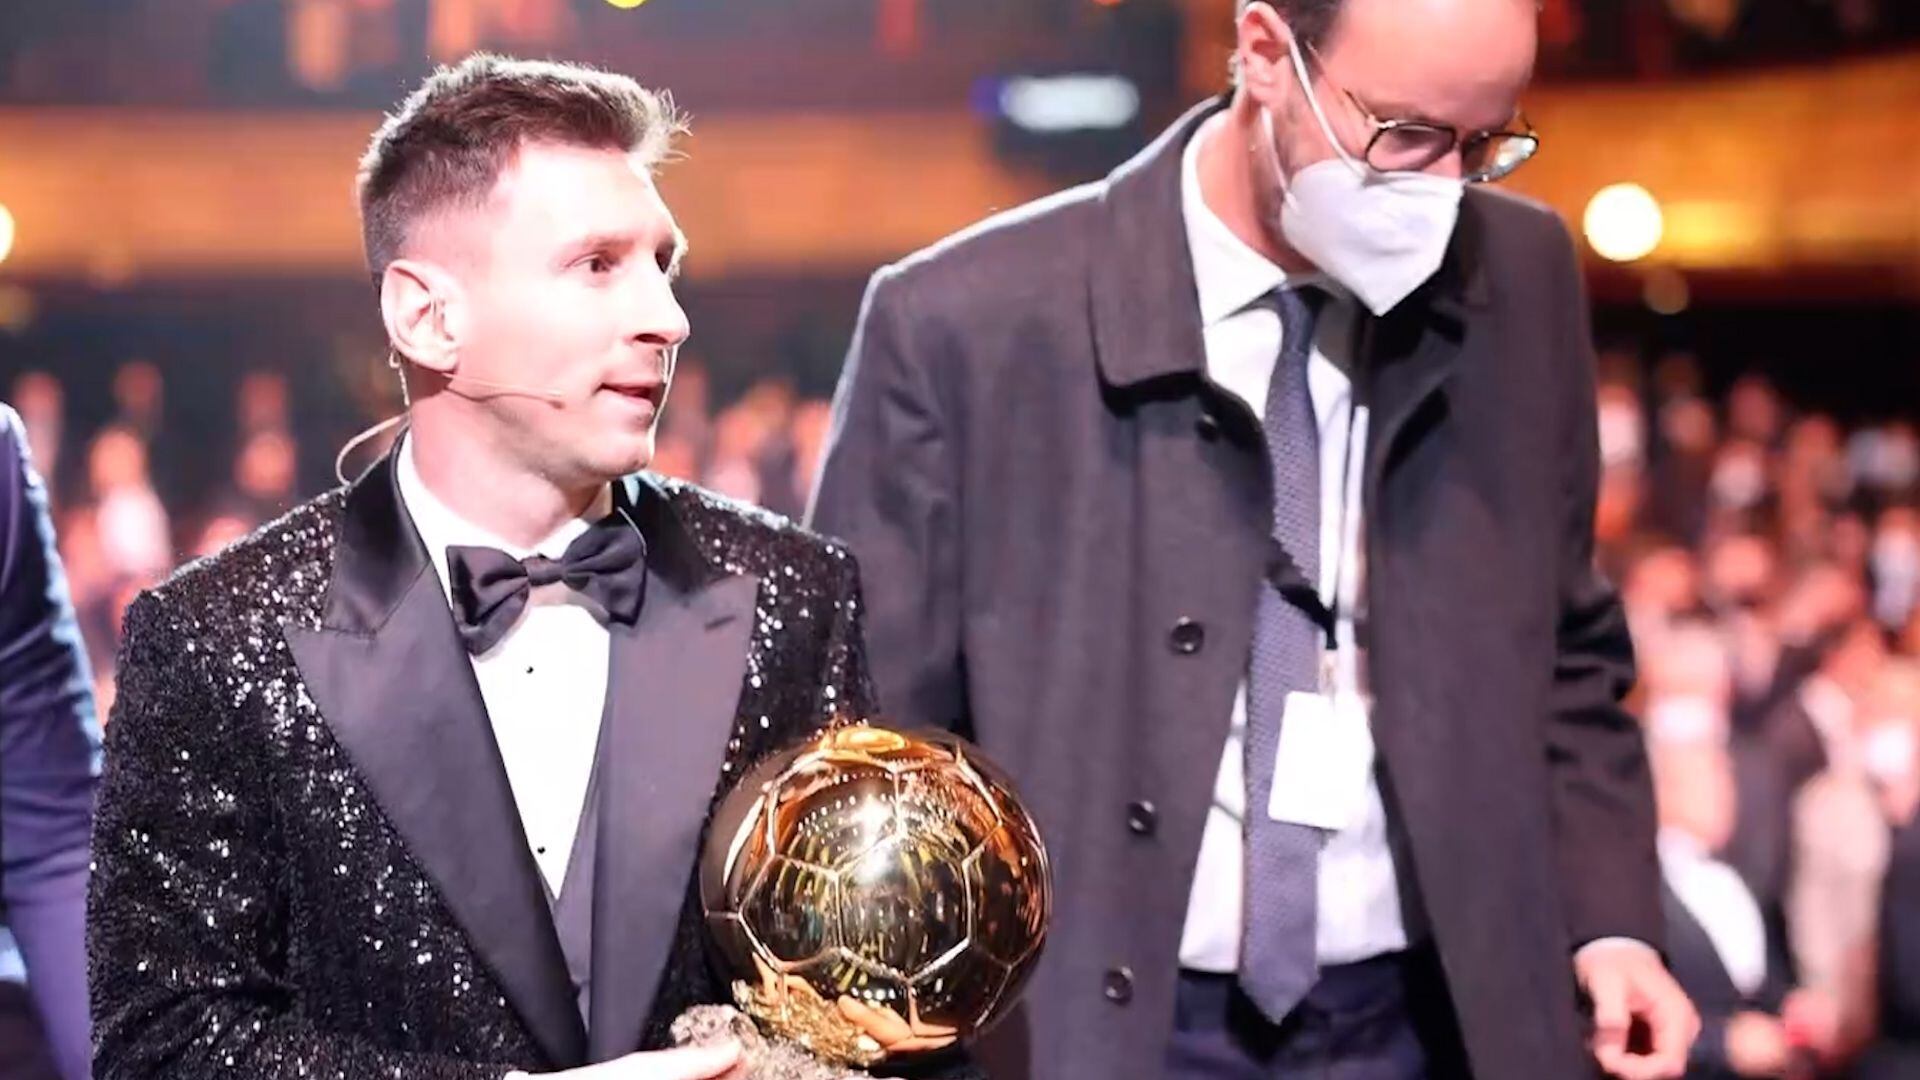 El detrás de escena de la entrega del Balón de Oro a Messi